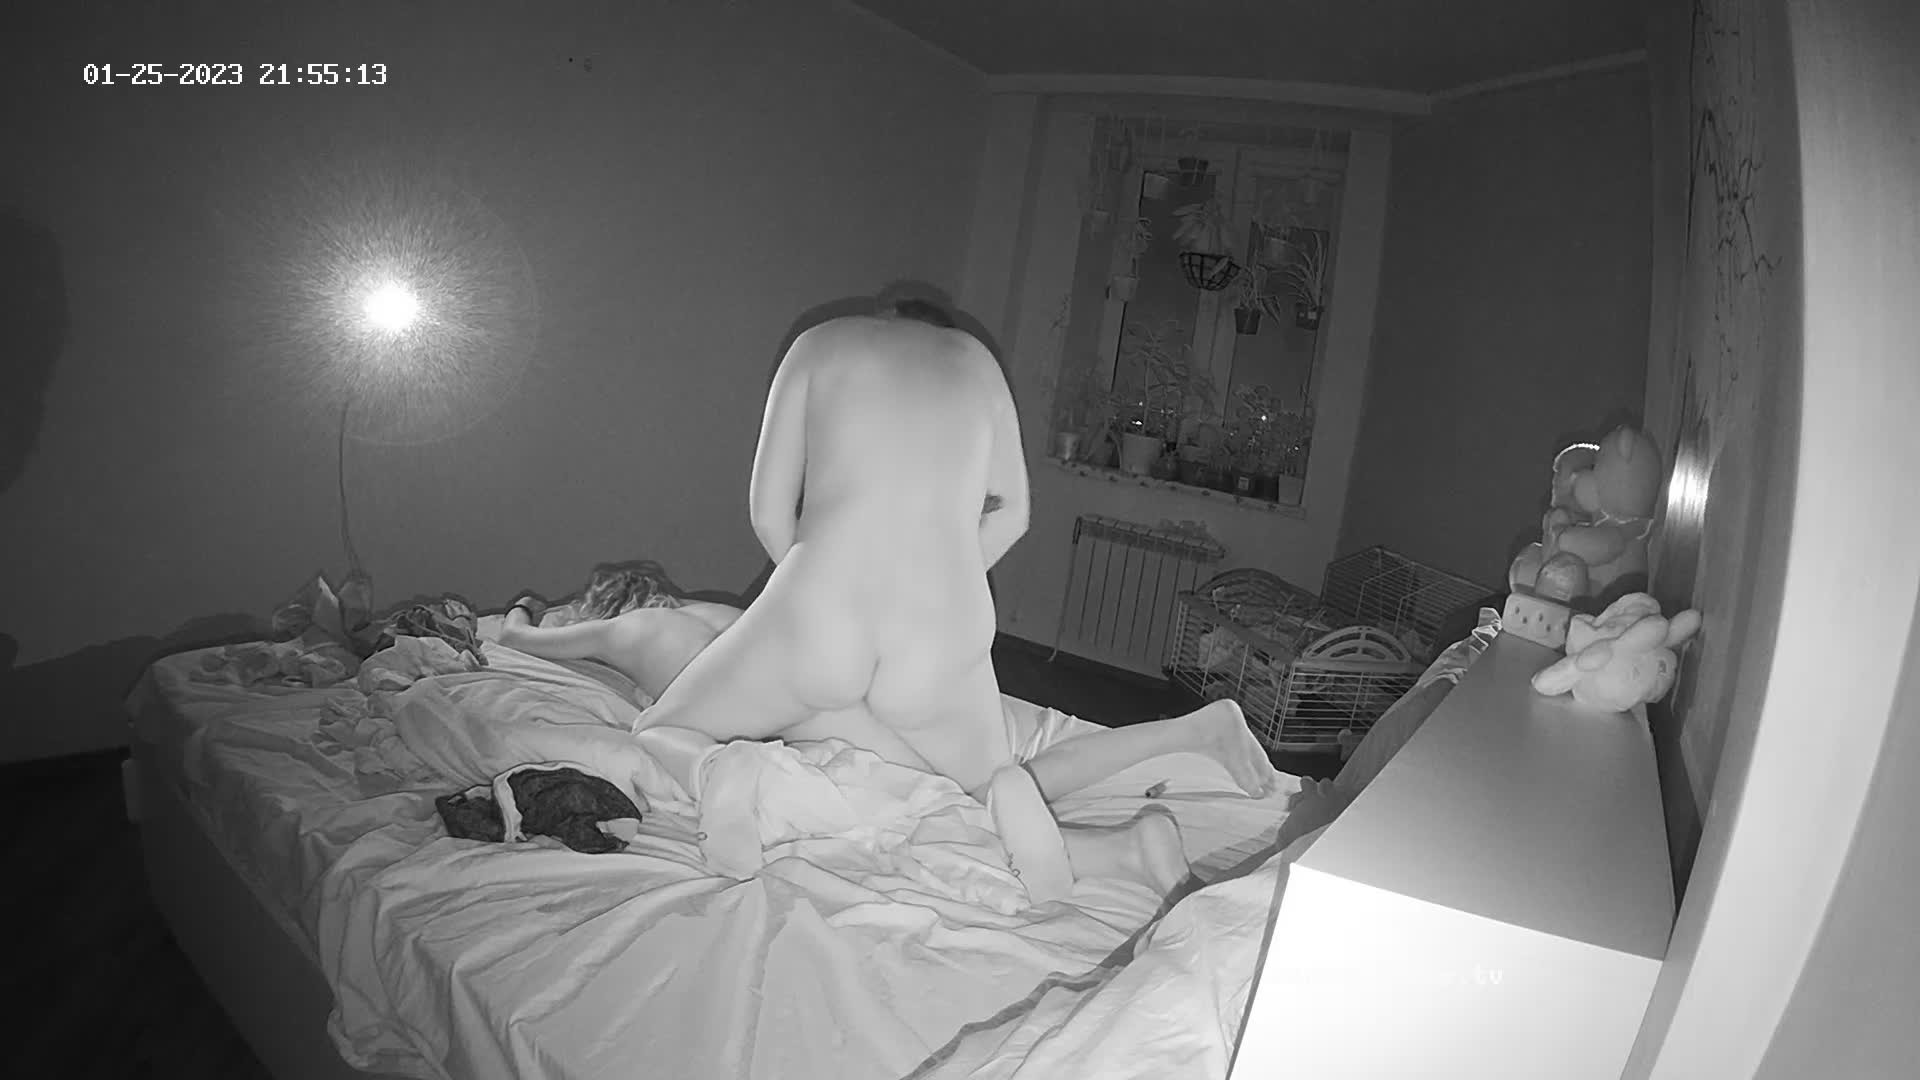 Gella & Winston Wolfe bedroom sex, Jan-25-2023